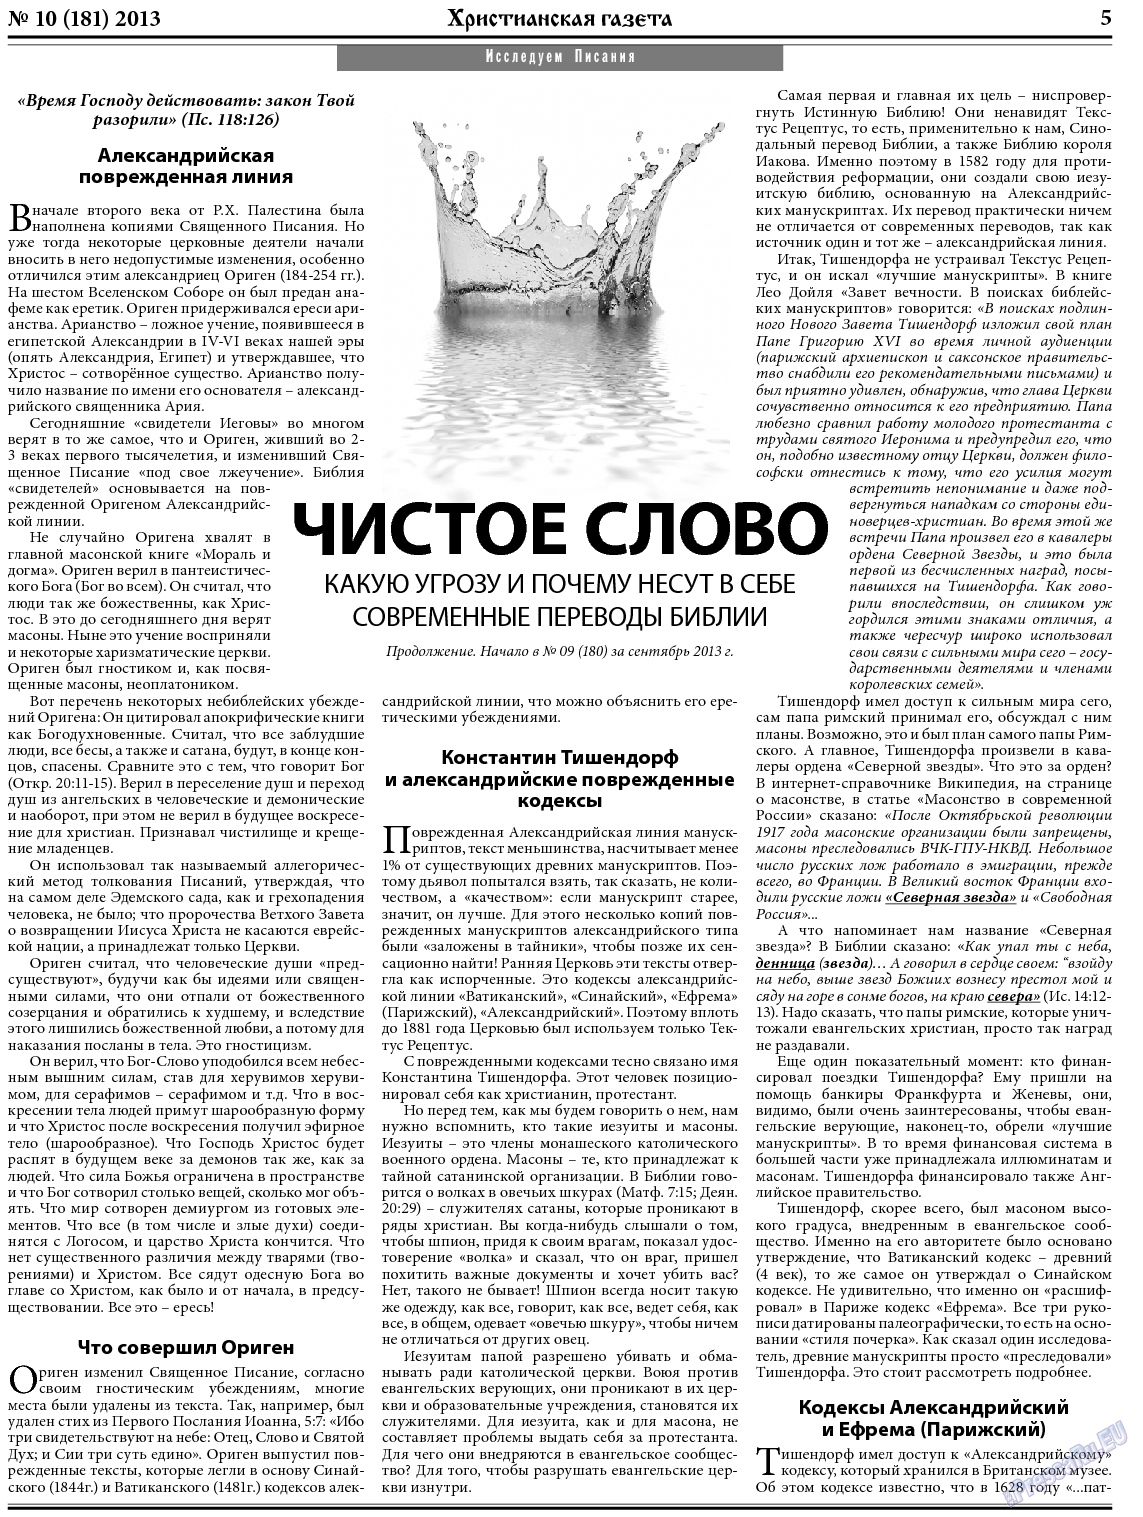 Христианская газета, газета. 2013 №10 стр.5